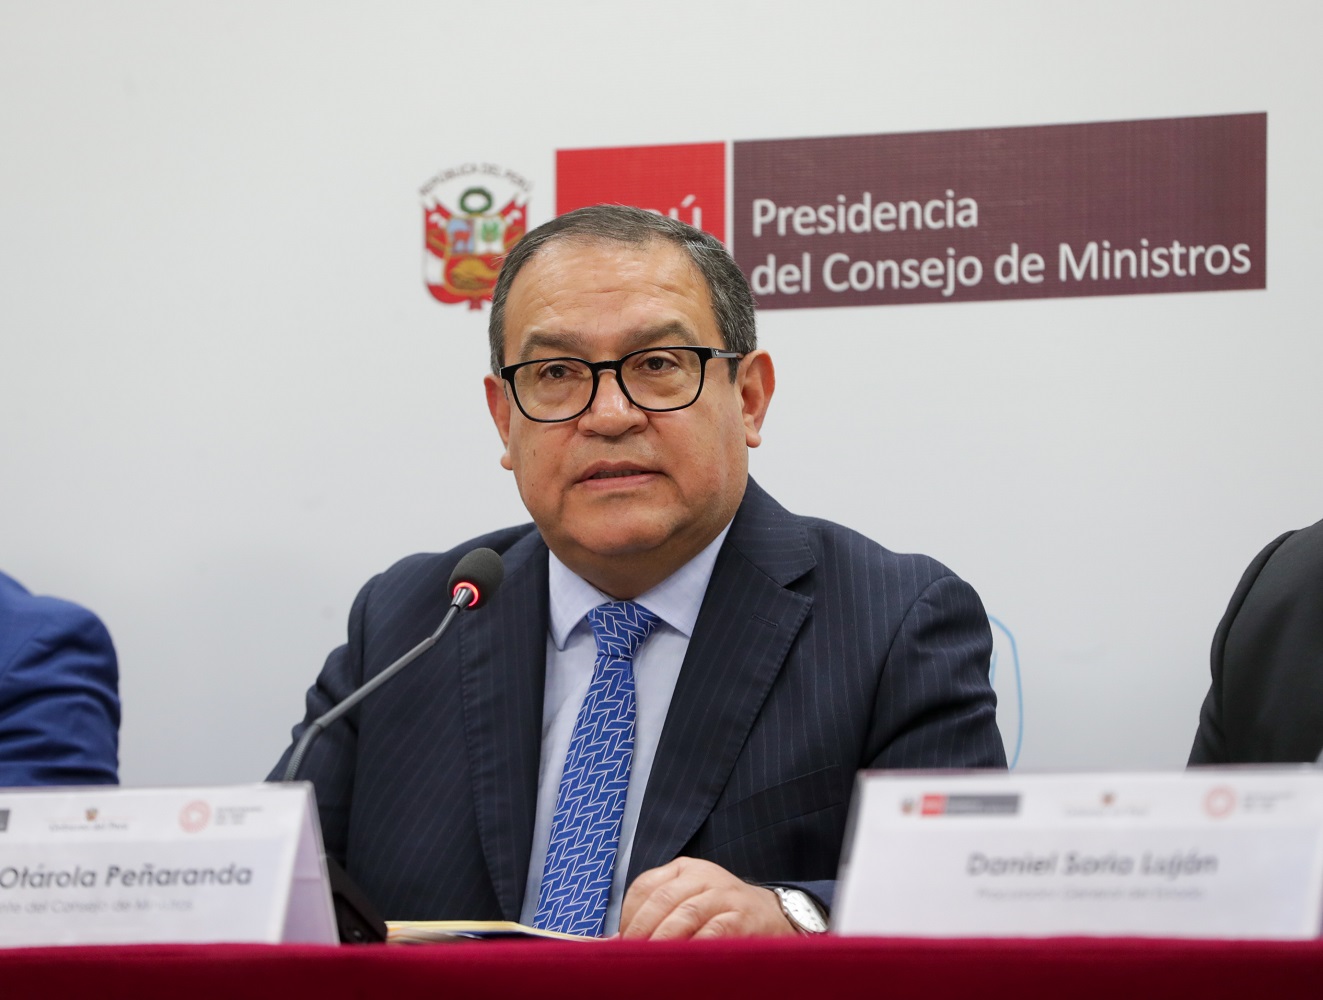 Gobierno defenderá al Estado peruano y la memoria de los compatriotas asesinados por los terroristas, afirmó el premier Alberto Otárola.